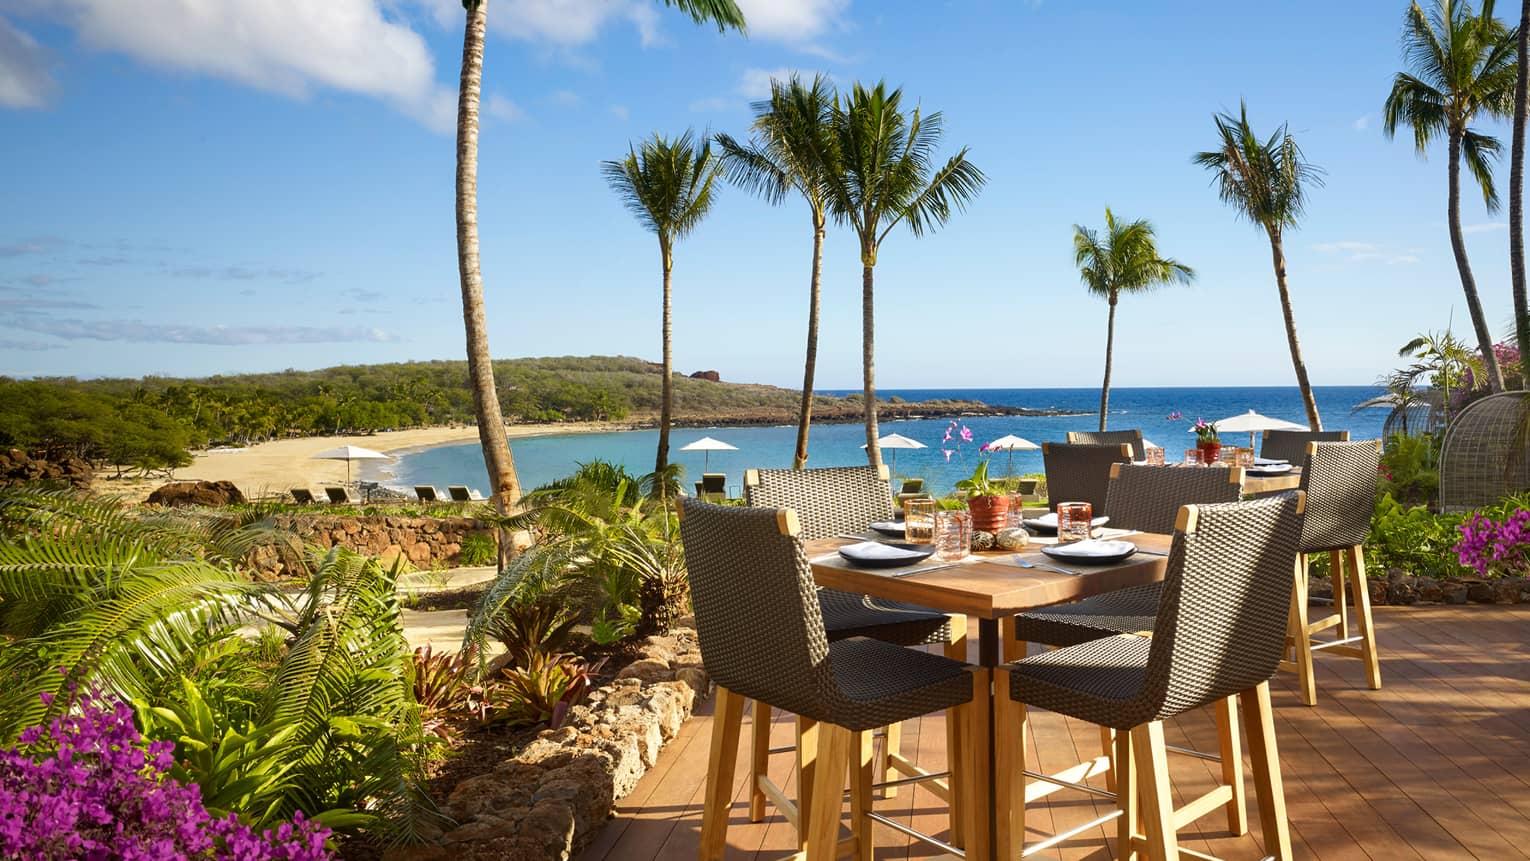 Malibu Farm Bar dining table, chairs on sunny patio overlooking beach, ocean